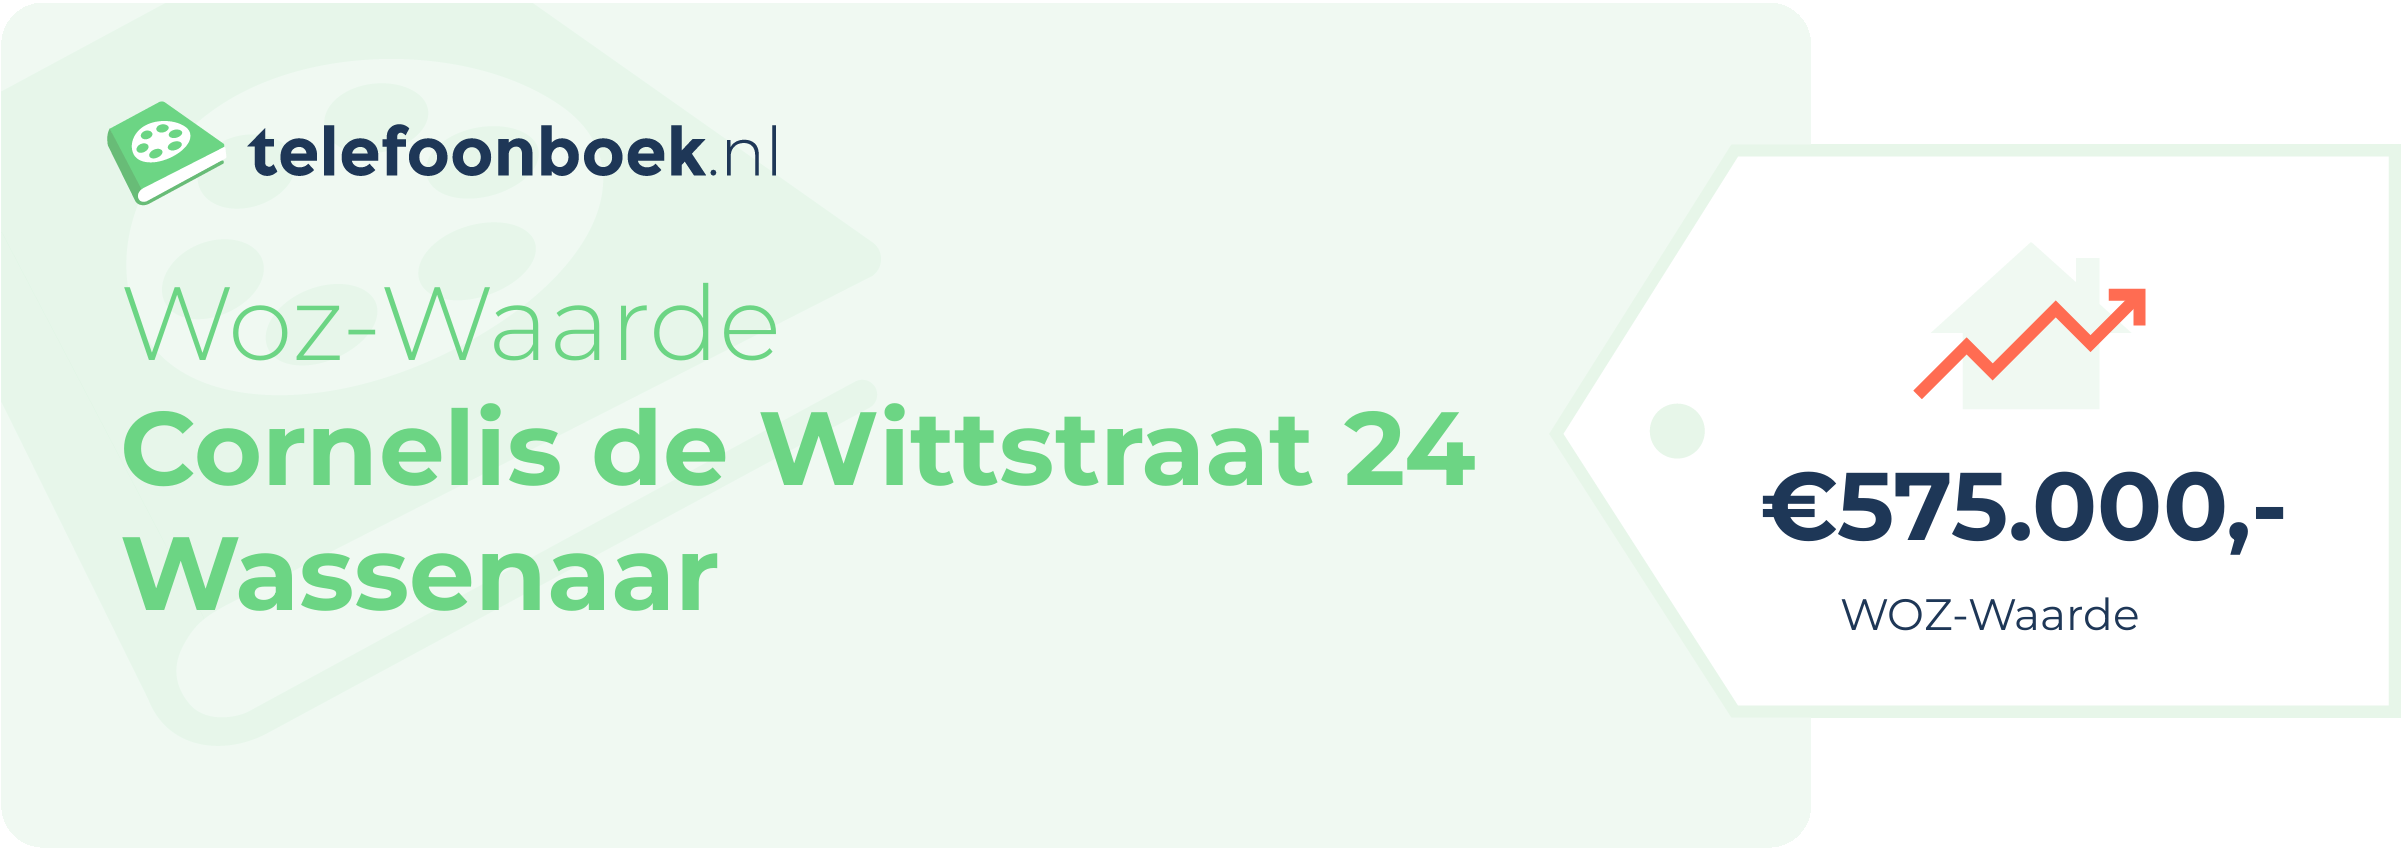 WOZ-waarde Cornelis De Wittstraat 24 Wassenaar